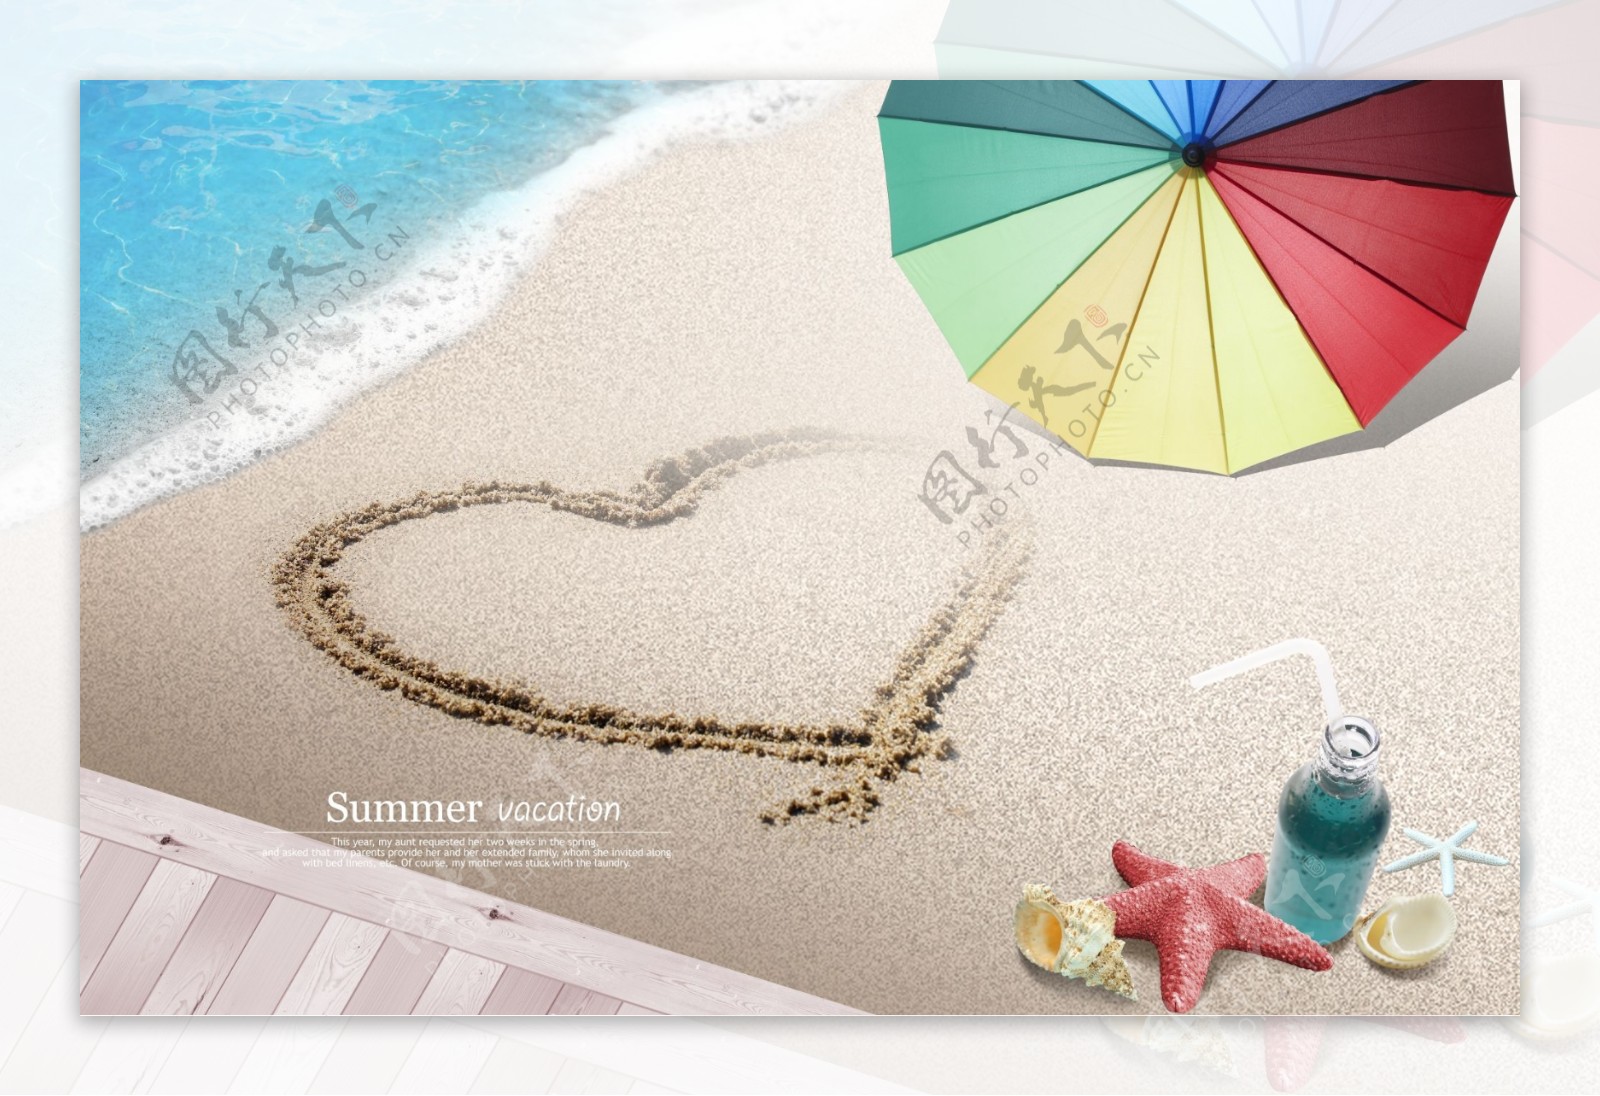 海滩上的彩色雨伞和心形